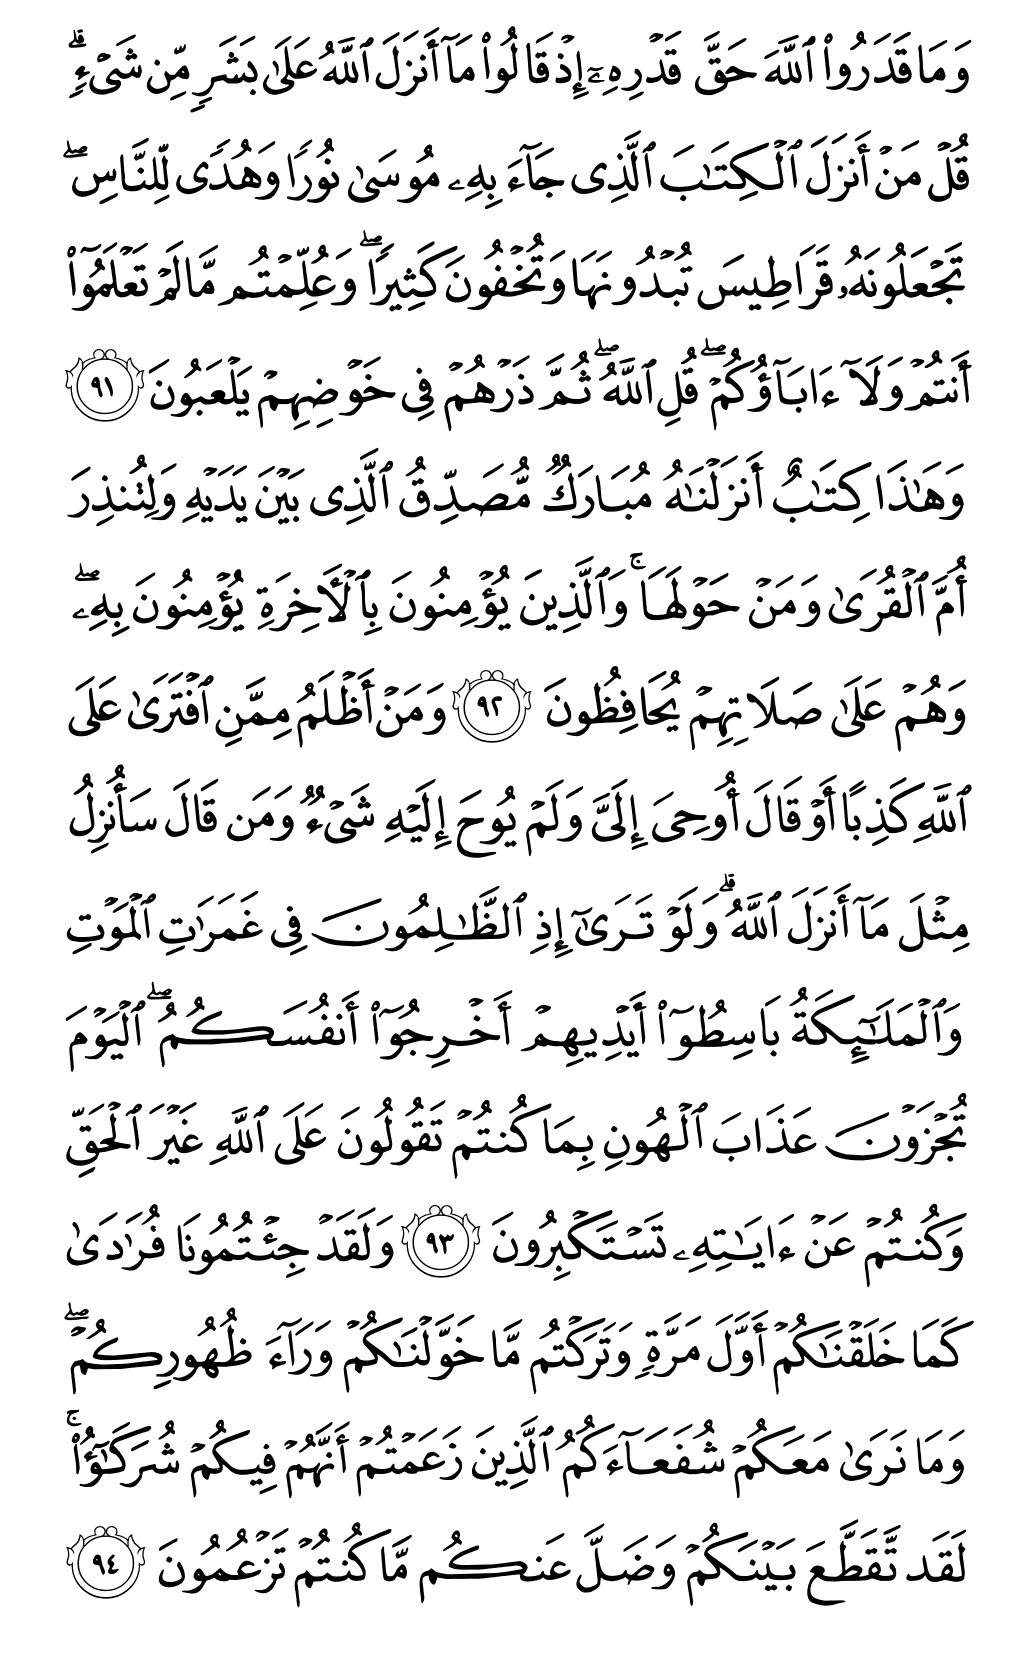 الصفحة رقم 139 من القرآن الكريم